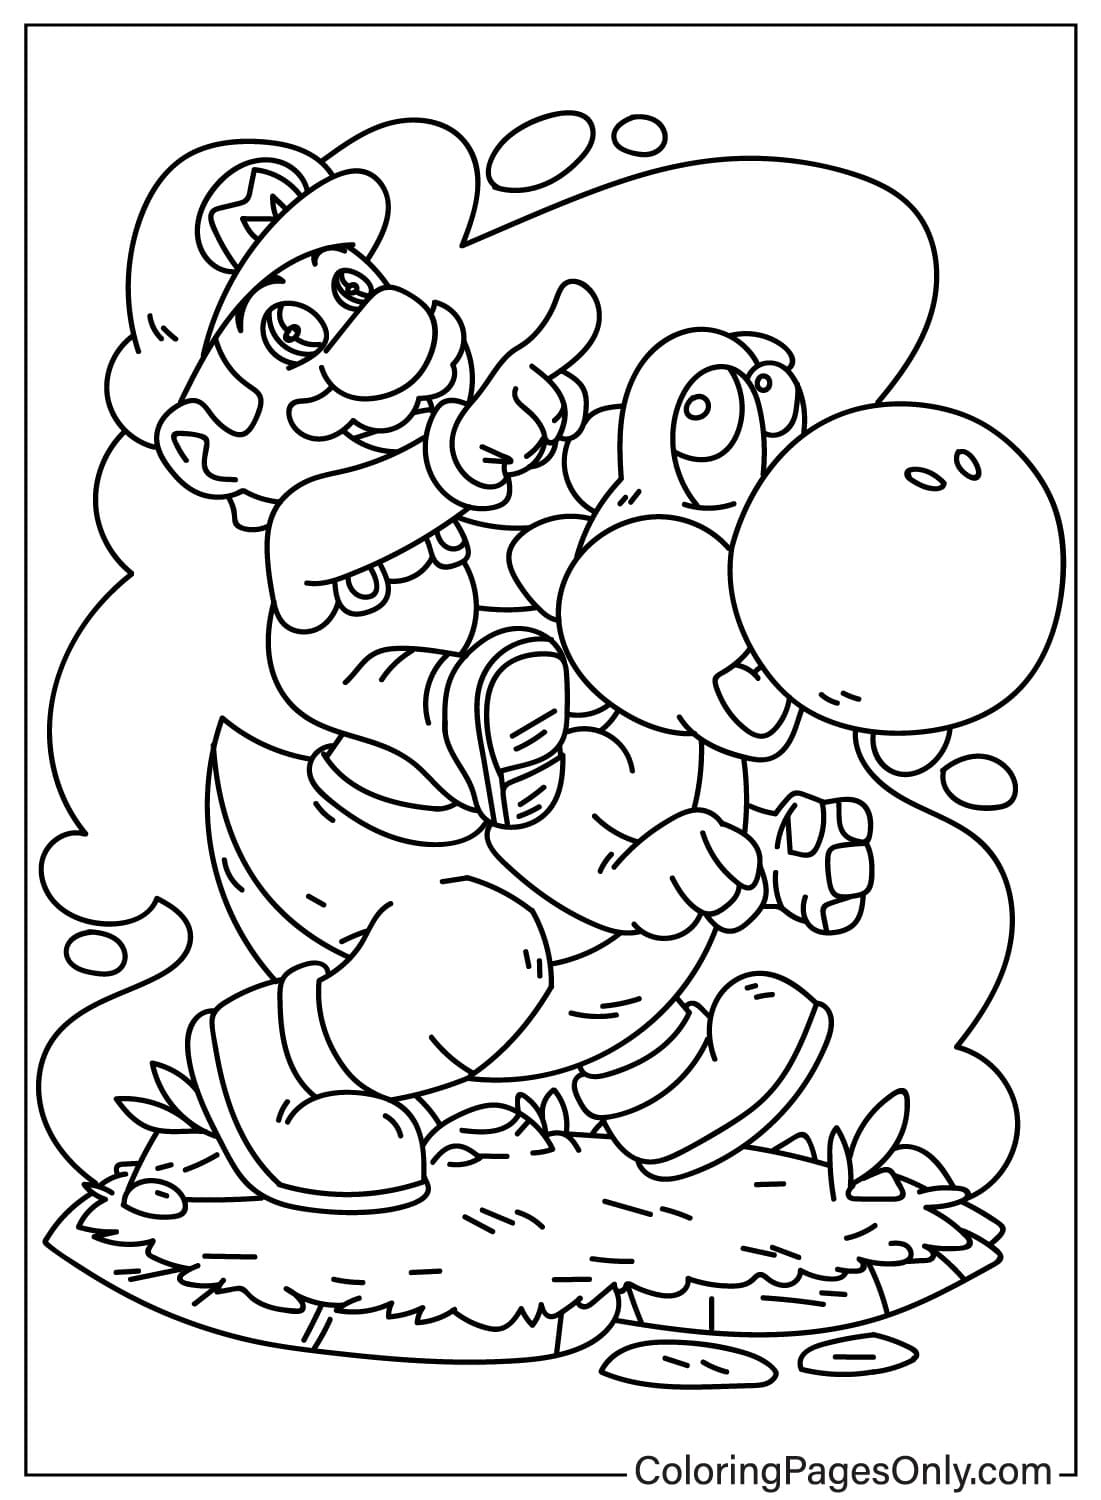 Desenho de Mario e Yoshi para colorir